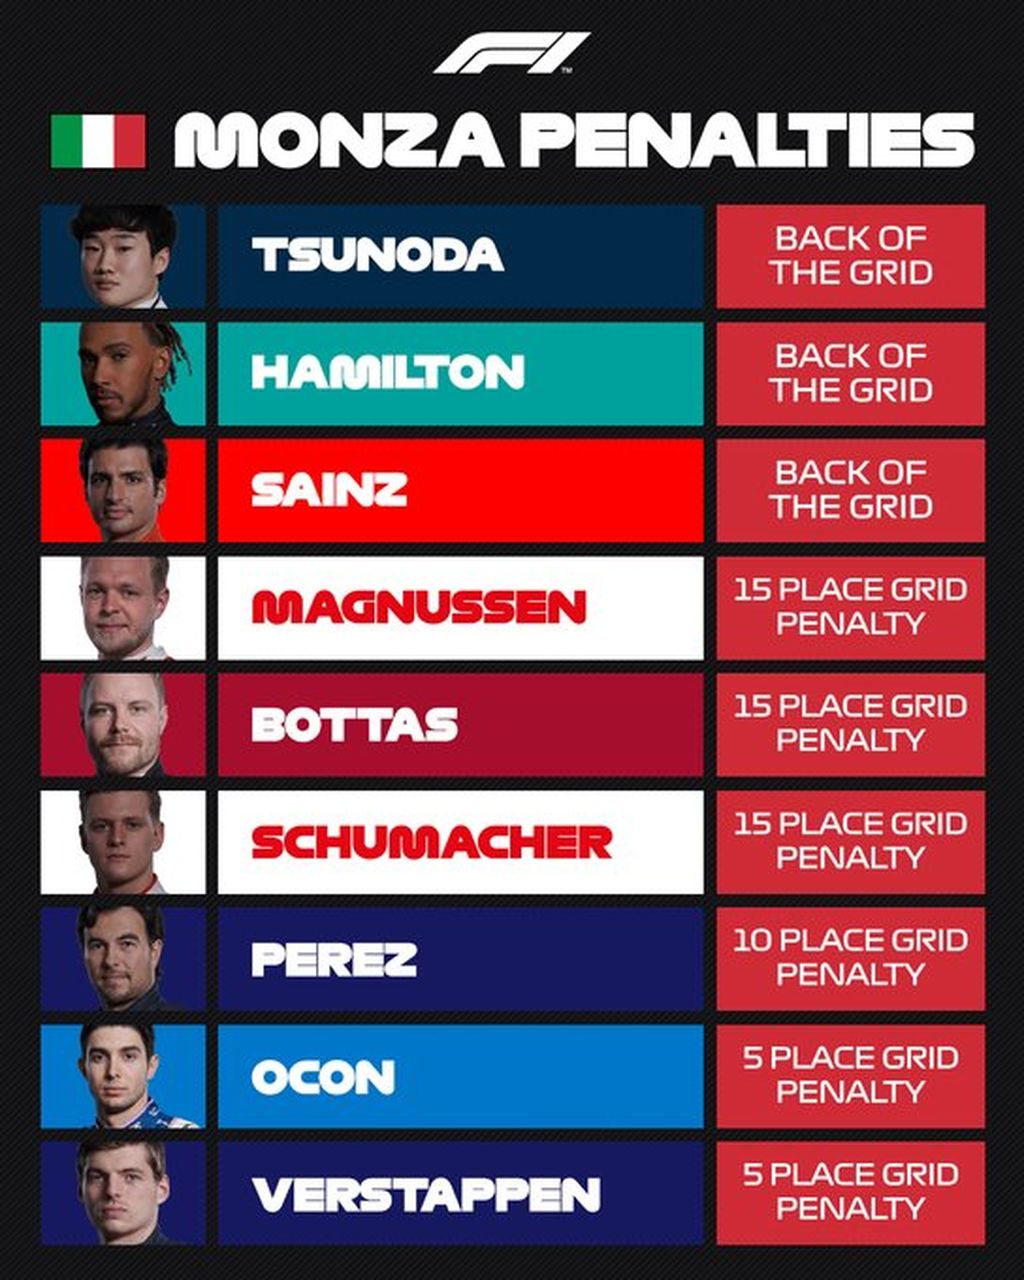 Daftar pebalap yang mendapat penalti mundur posisi start dalam balapan Formula 1 seri Italia di Sirkuit Monza, Minggu (11/9/2022), karena menggunakan komponen baru pada mesin, pengendali elektronik, serta girboks, melebihi kuota semusim. Penalti ini memengaruhi urutan start pebalap di belakang Charles Leclerc yang meraih pole position.